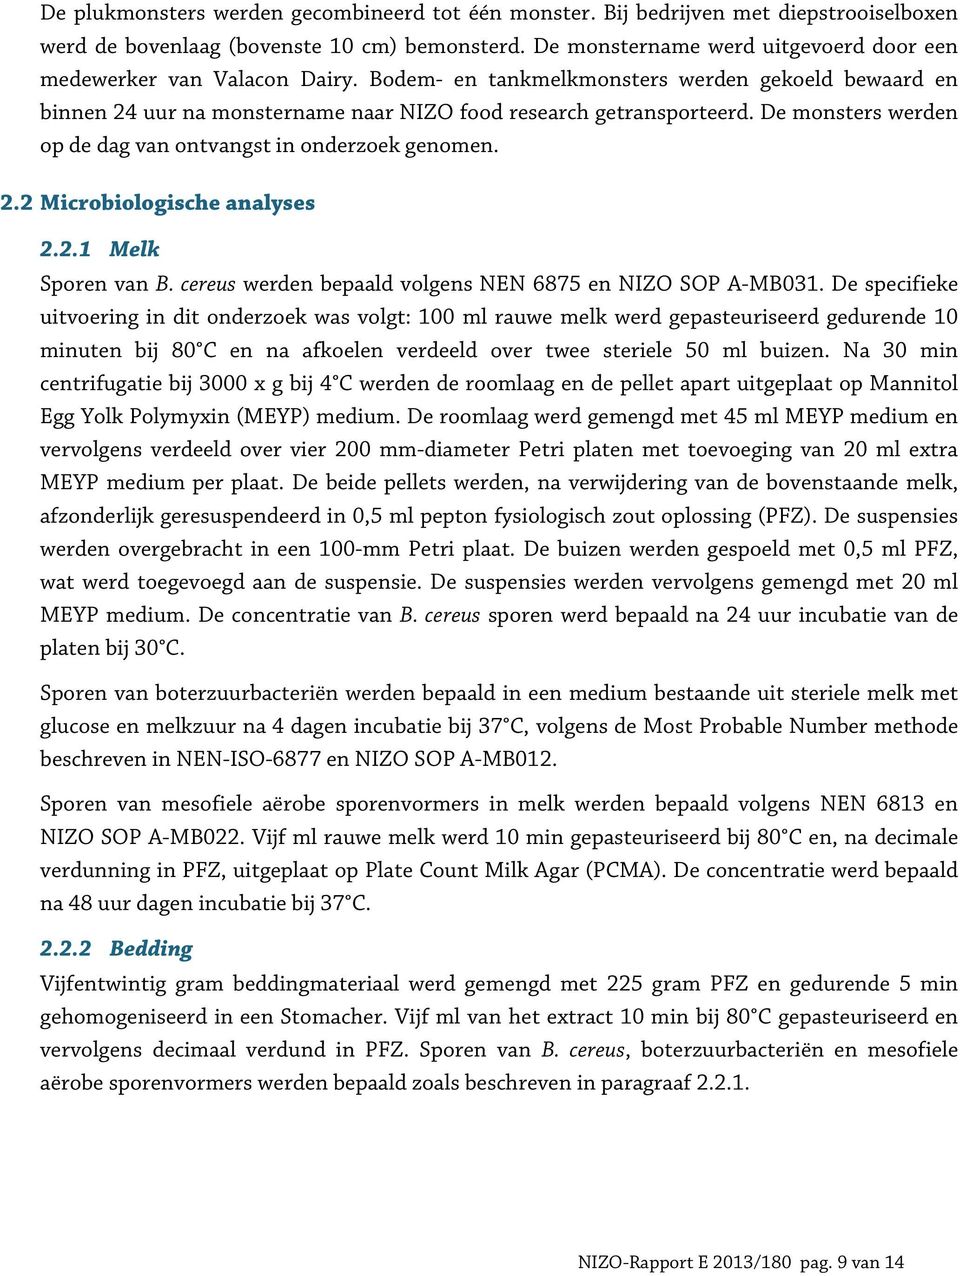 De monsters werden op de dag van ontvangst in onderzoek genomen. 2.2 Microbiologische analyses 2.2.1 Melk Sporen van B. cereus werden bepaald volgens NEN 6875 en NIZO SOP A-MB031.